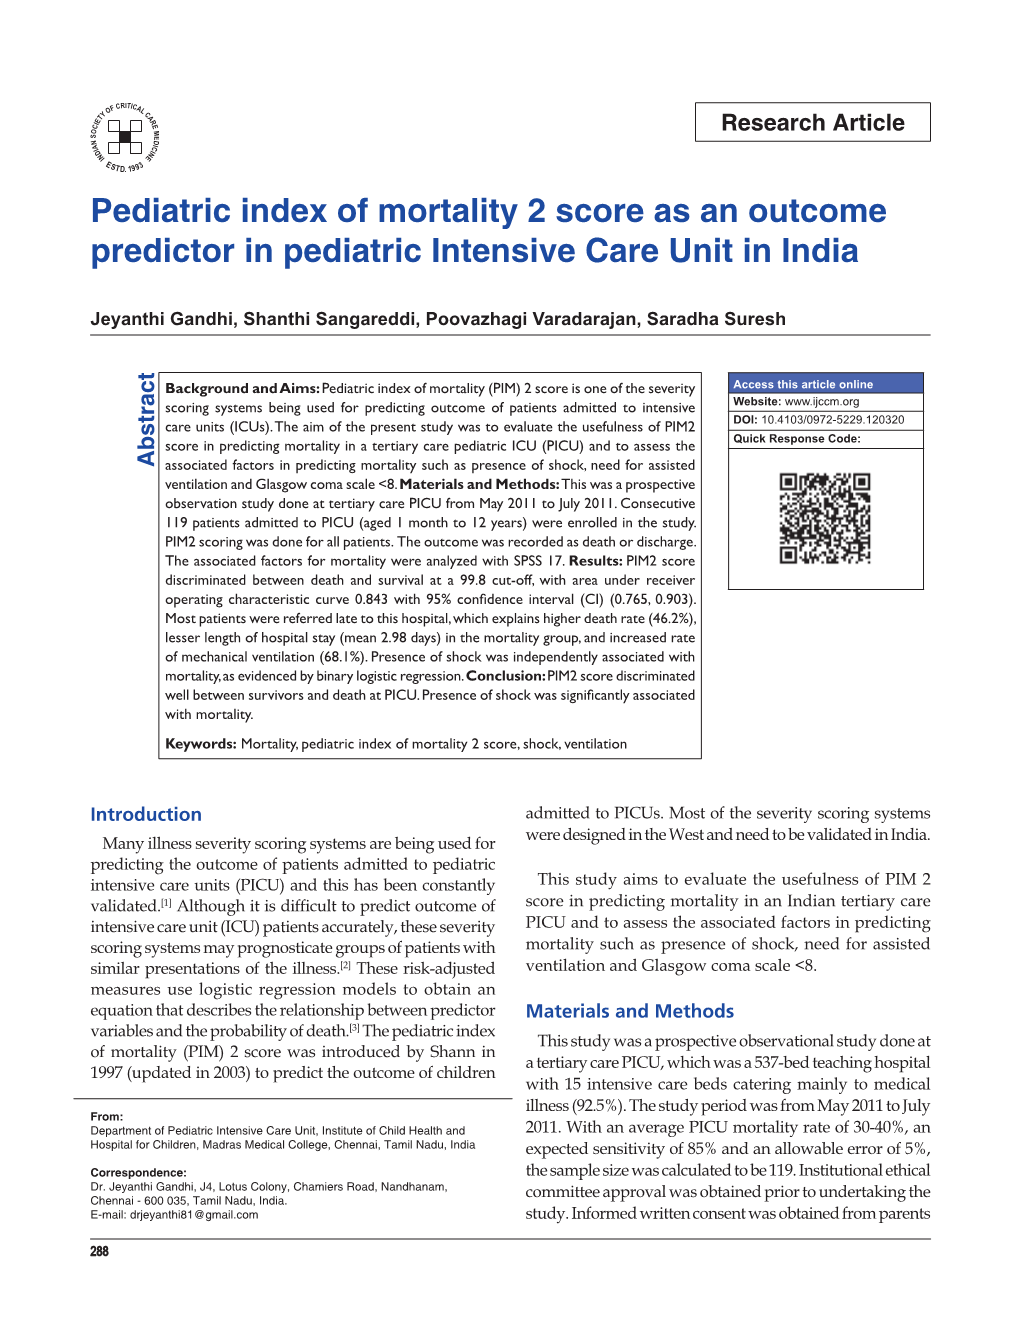 Pediatric Index of Mortality 2 Score As an Outcome Predictor in Pediatric Intensive Care Unit in India